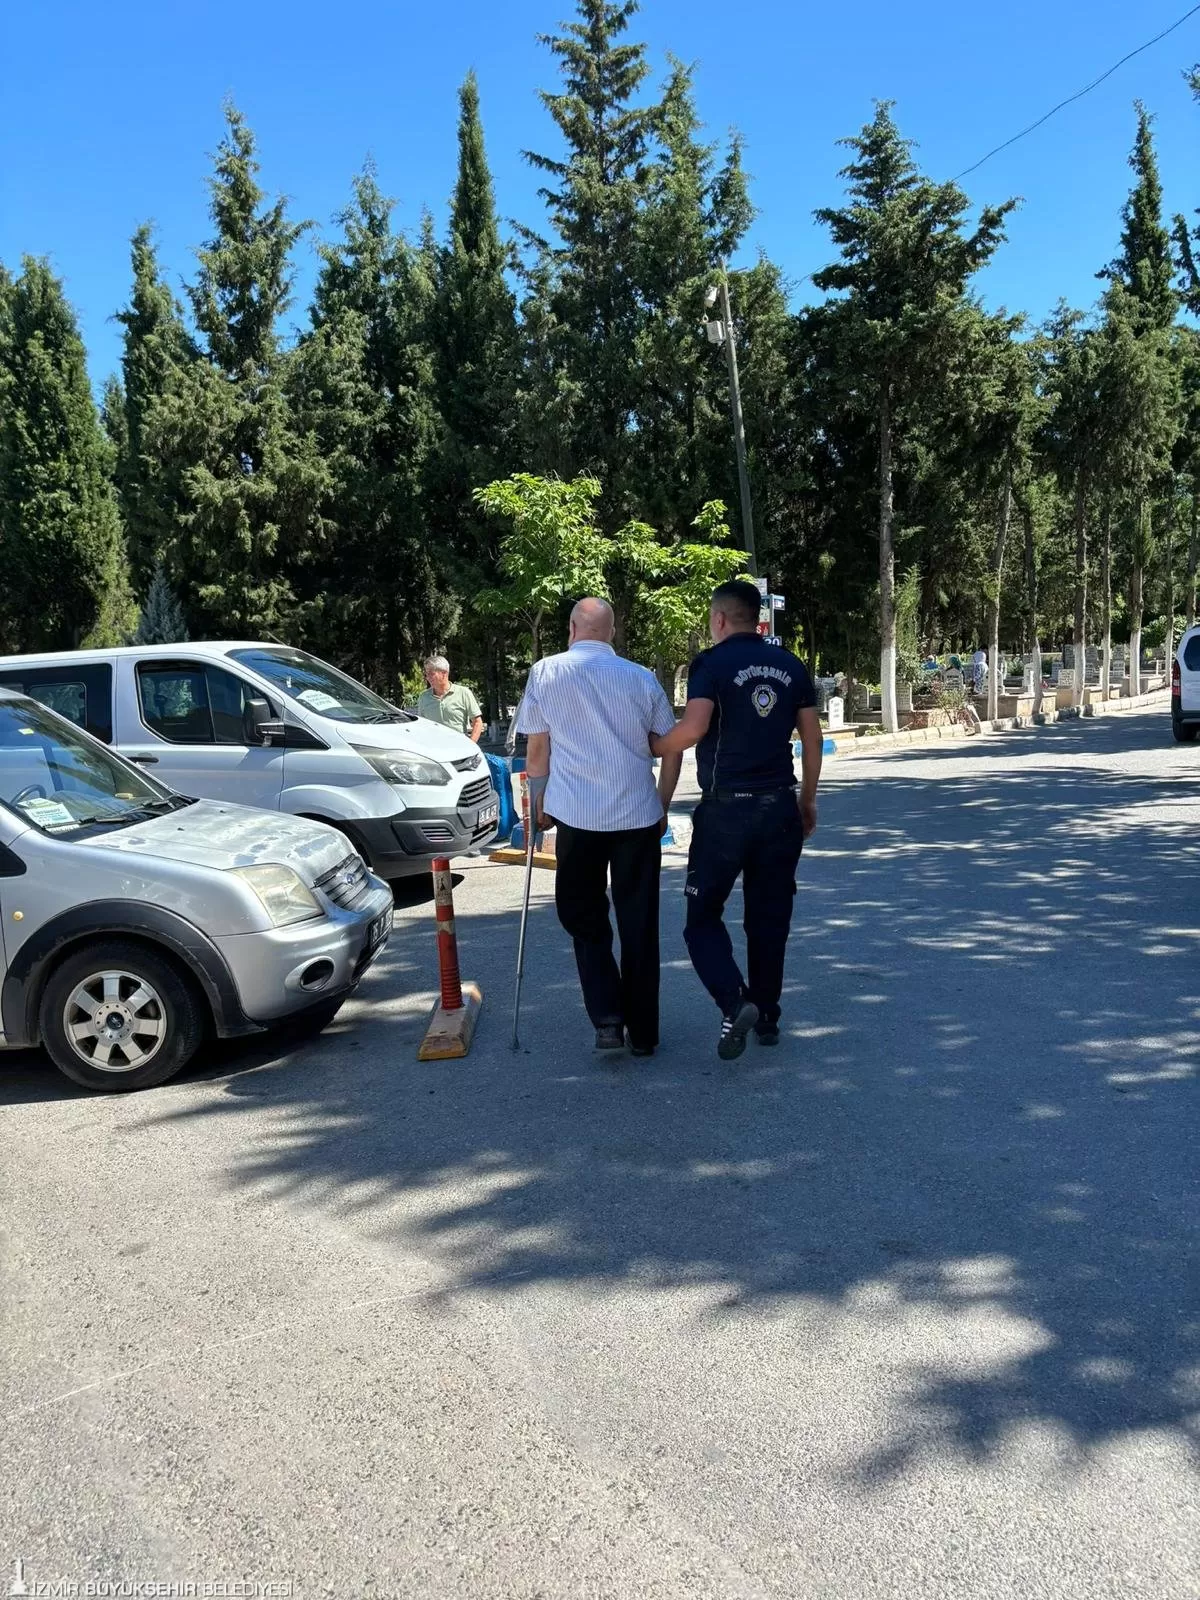 İzmir Büyükşehir Belediyesi zabıta ekipleri, Kurban Bayramı'nda kent genelinde yoğun bir çalışma yürüttü.